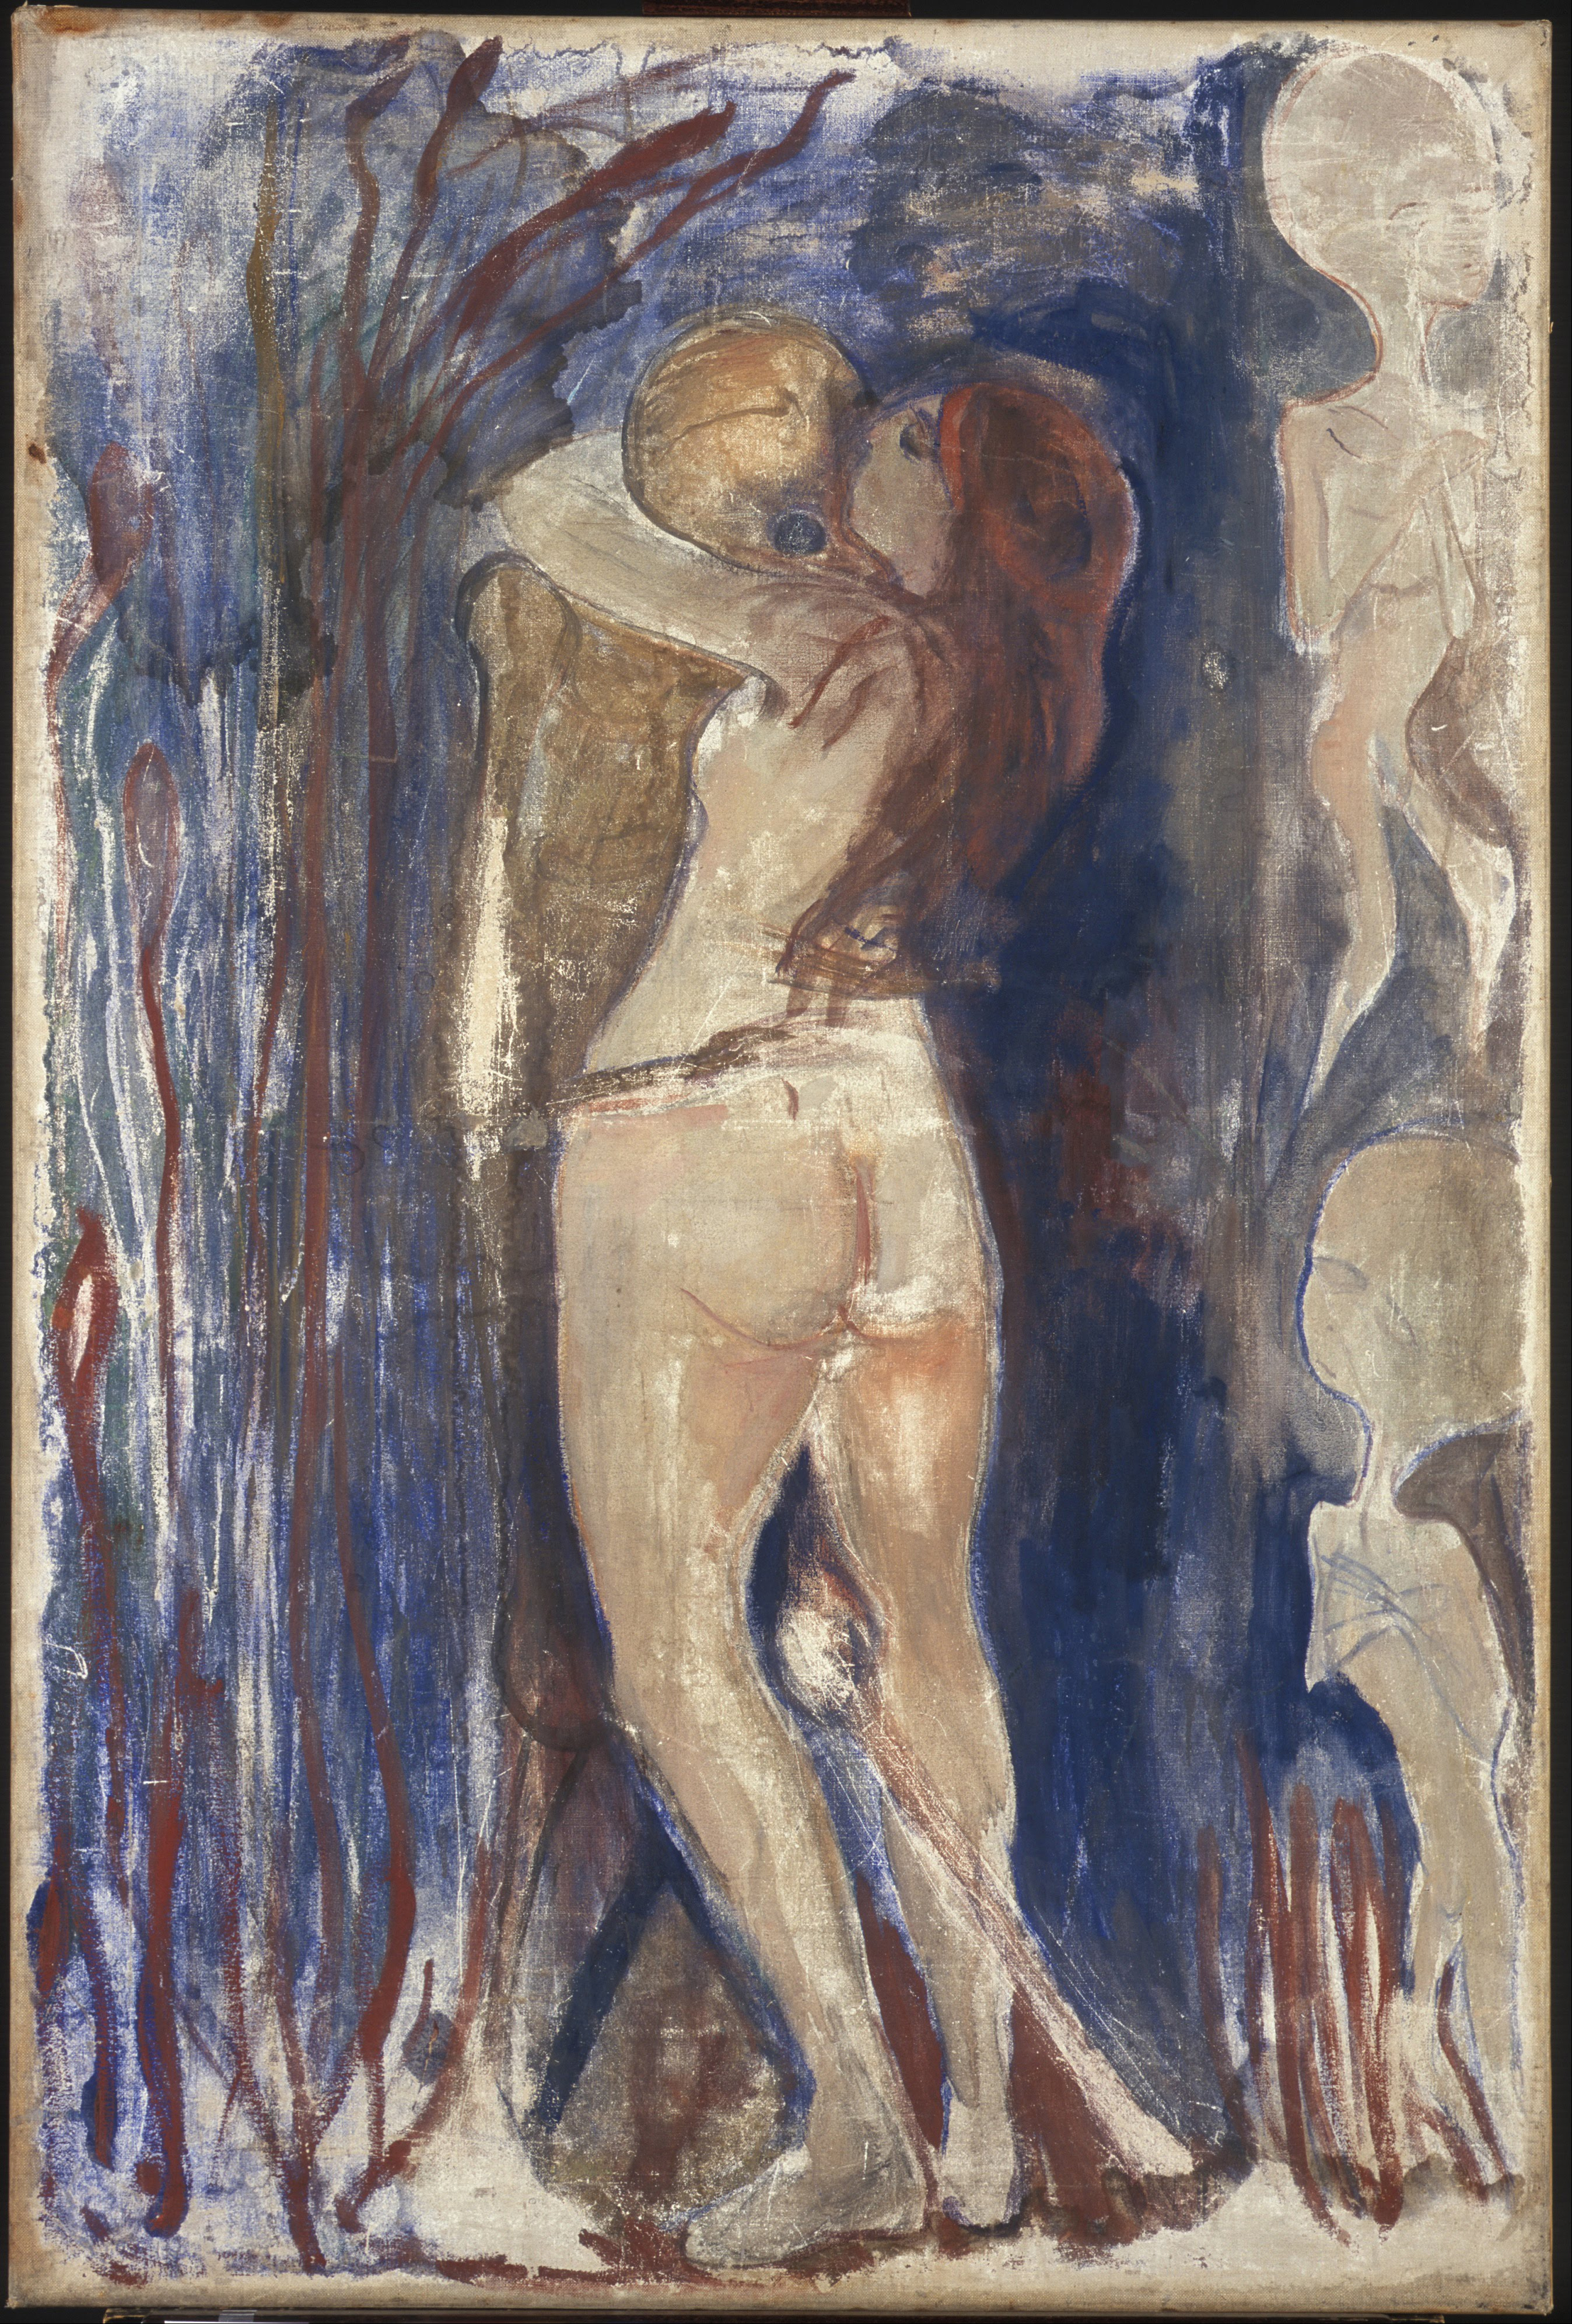 Смерть і життя by Edvard Munch - 1894 - 86 x 128 cм 